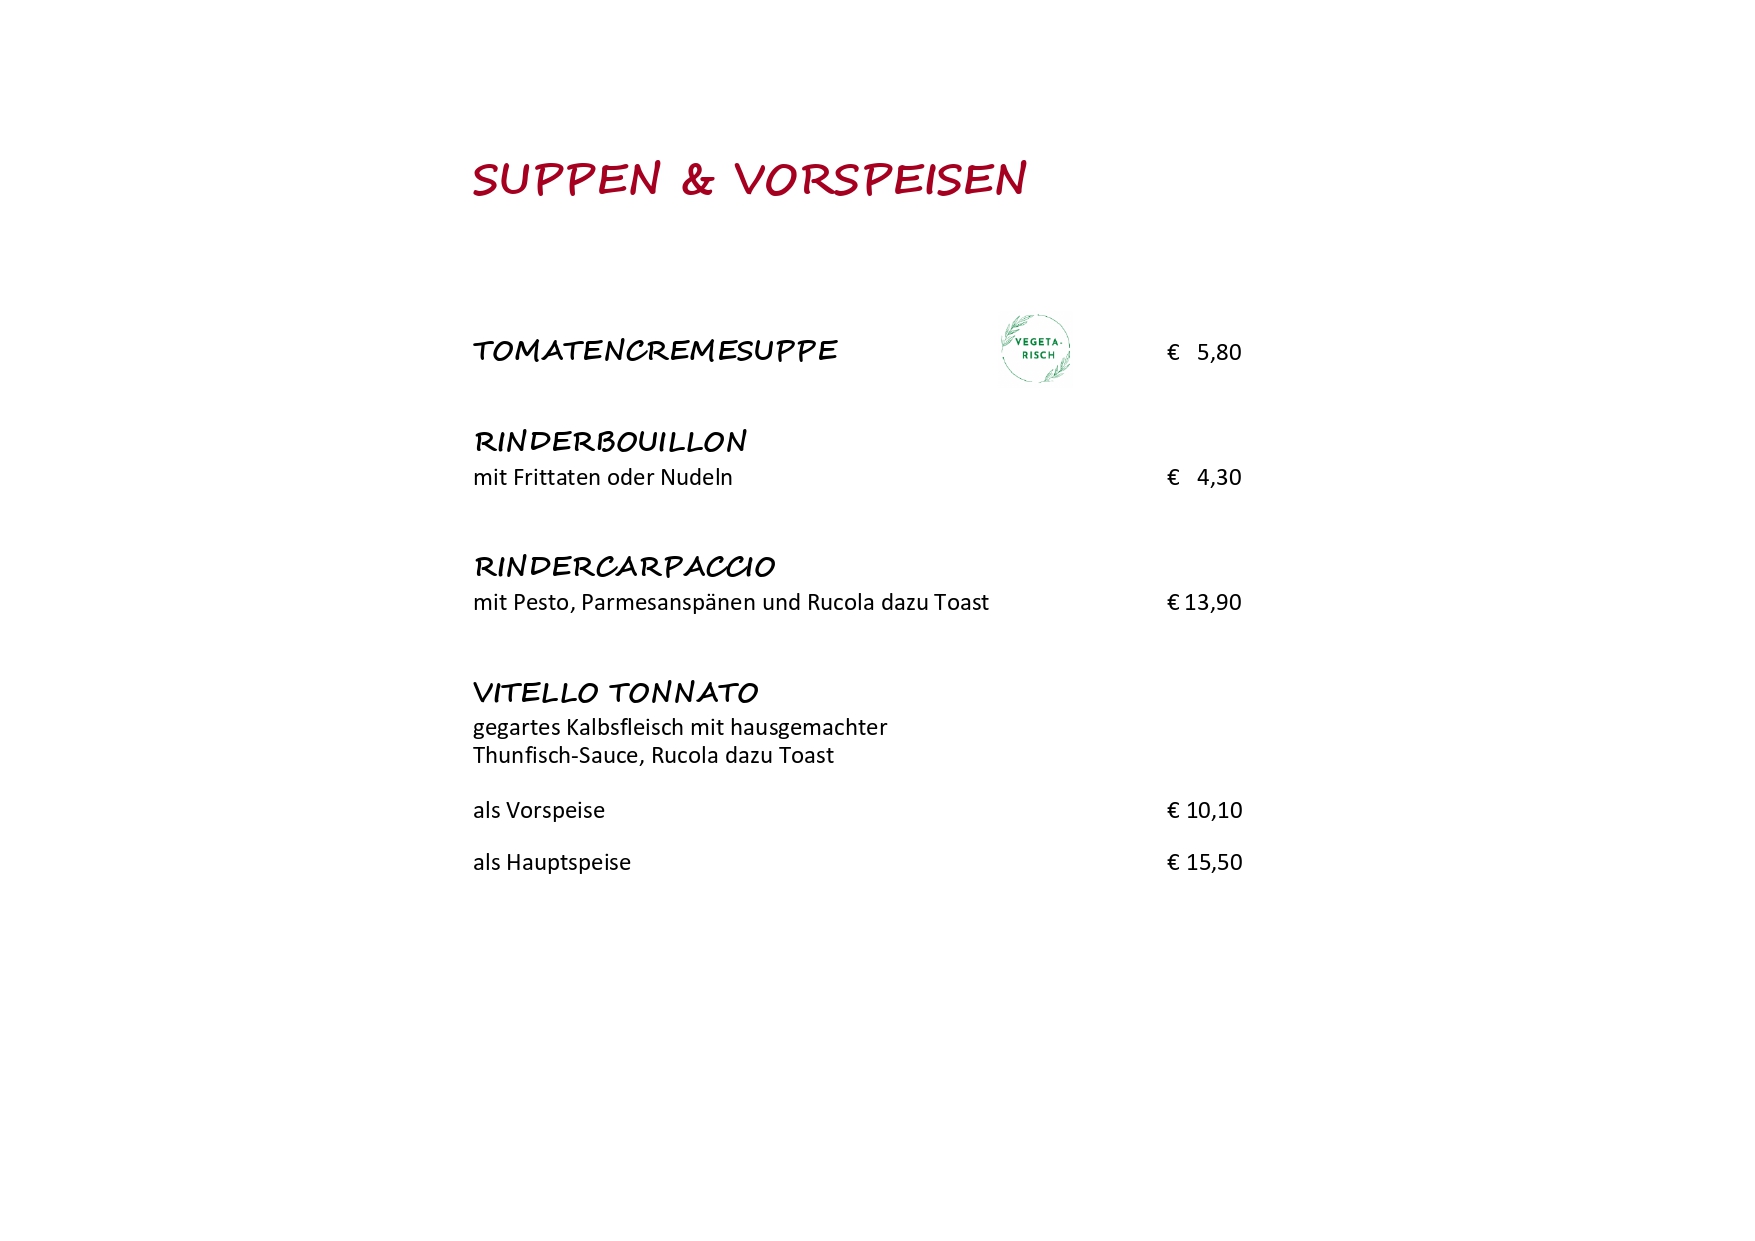 2_Suppen + Vorspeisen (Salate)-converted_page-0001.jpg